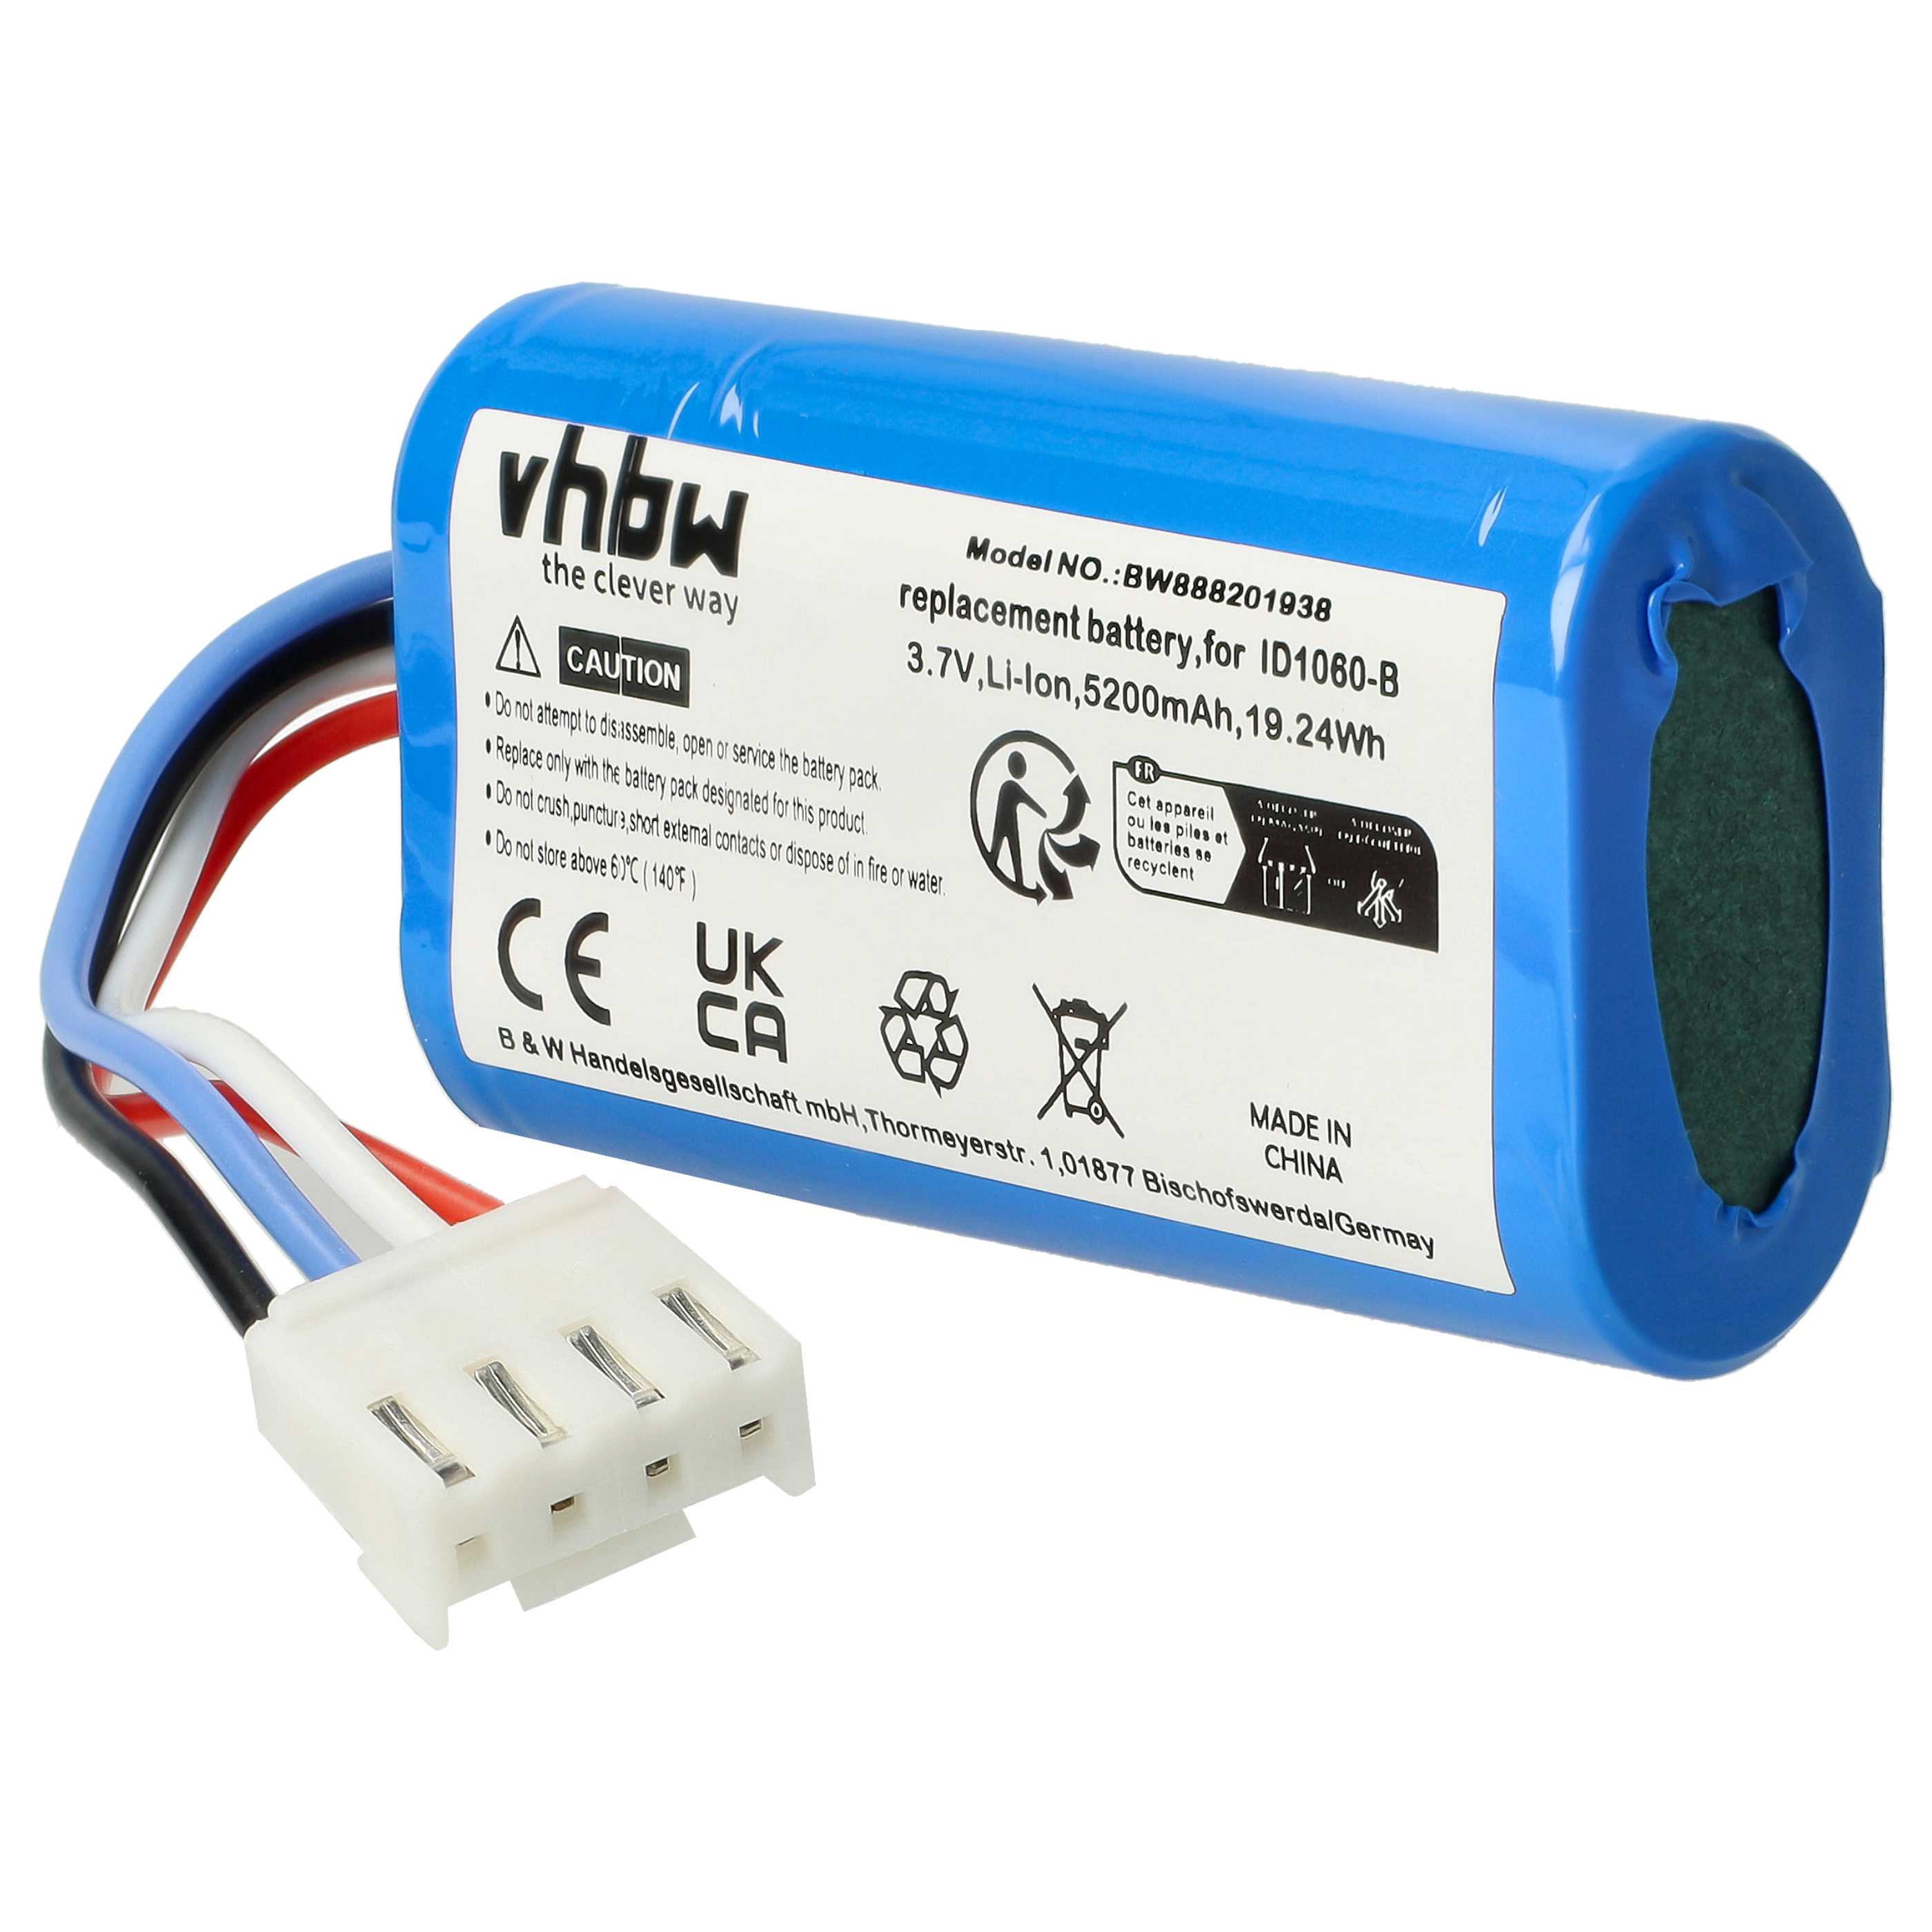 Batterie remplace JBL 49-364800-1BAT2-A, ID1060-A, 1INR19/66-2 pour enceinte JBL - 5200mAh 3,7V Li-ion